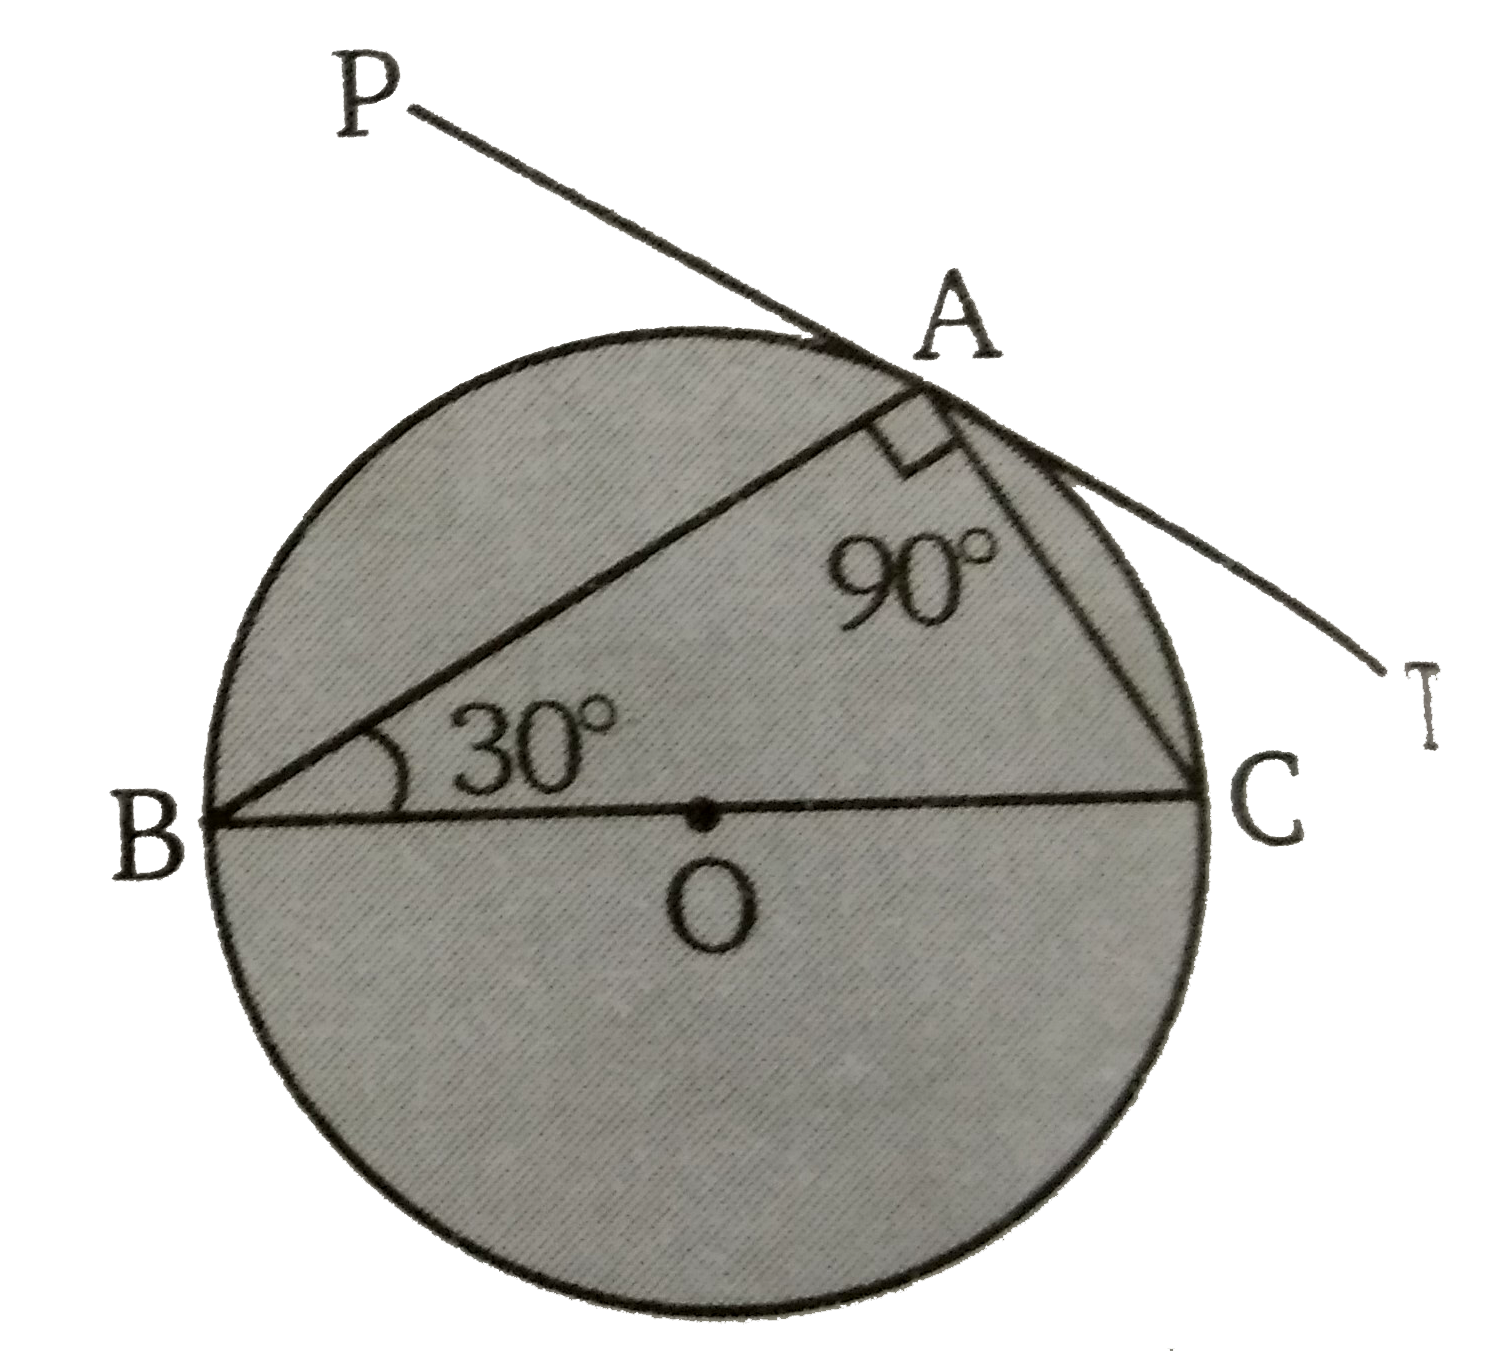 दिये गये चित्र में, वृत्त के बिन्दु A  पर PAT  एक स्पर्शी है। BC  वृत्त का व्यास है तथा  angleABC = 30^(@)  तब angle PAB  व  angle TAC के मान ज्ञात कीजिए ।